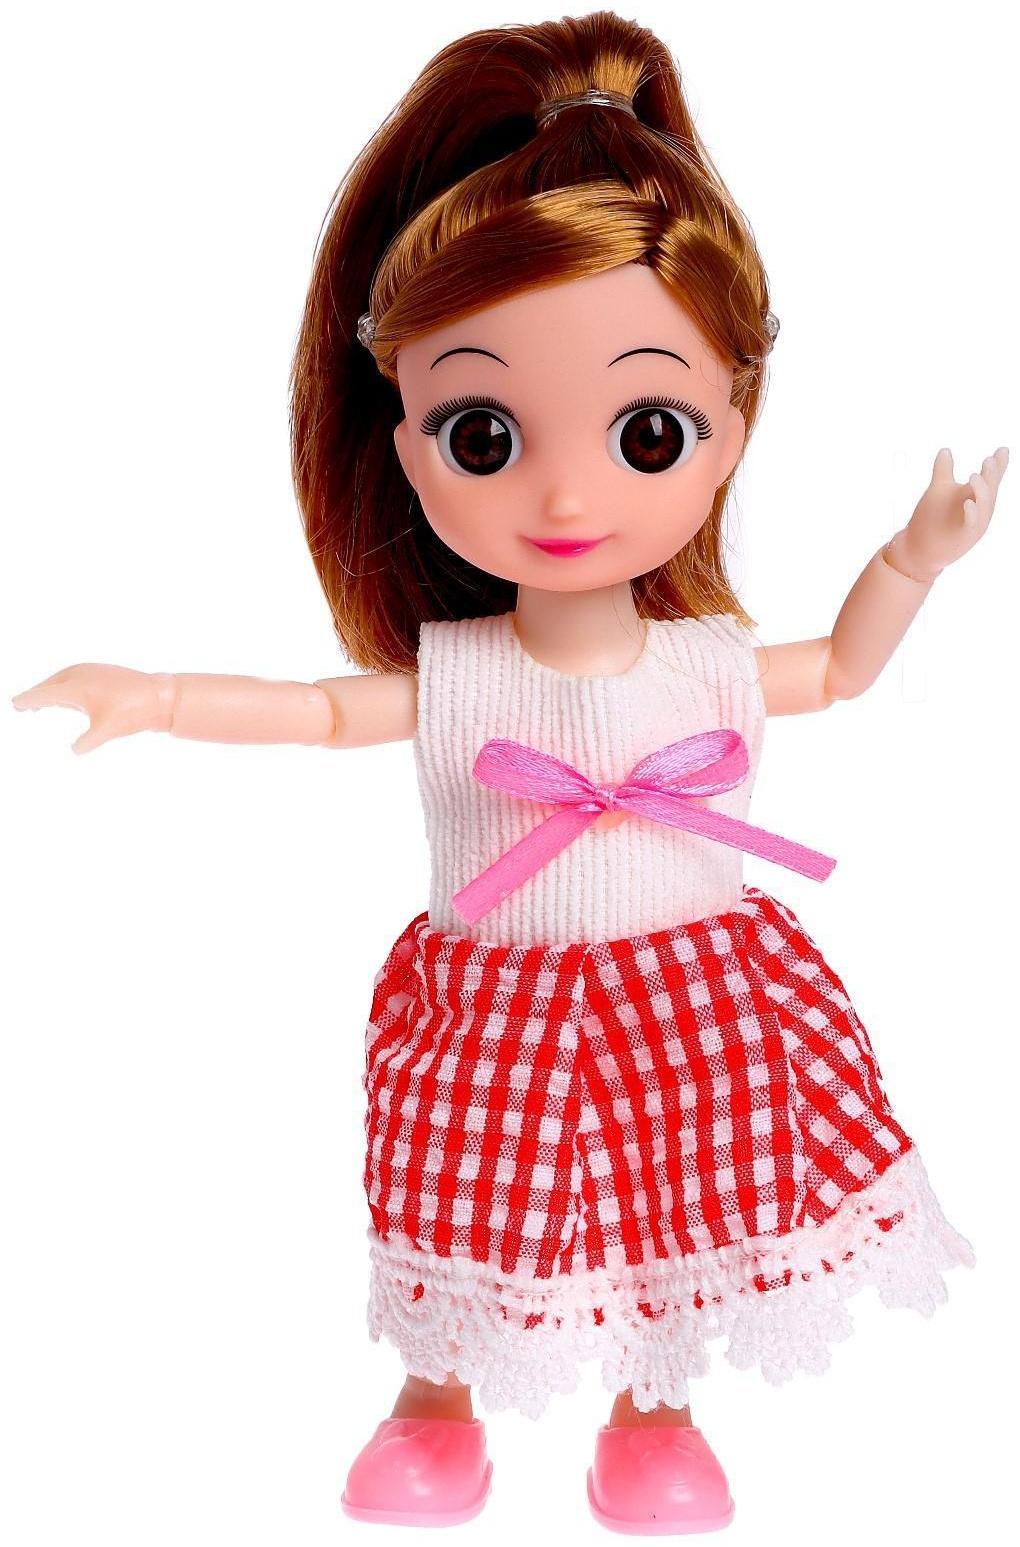 Кукла малышка шарнирная «Милана» с питомцем и аксессуарами